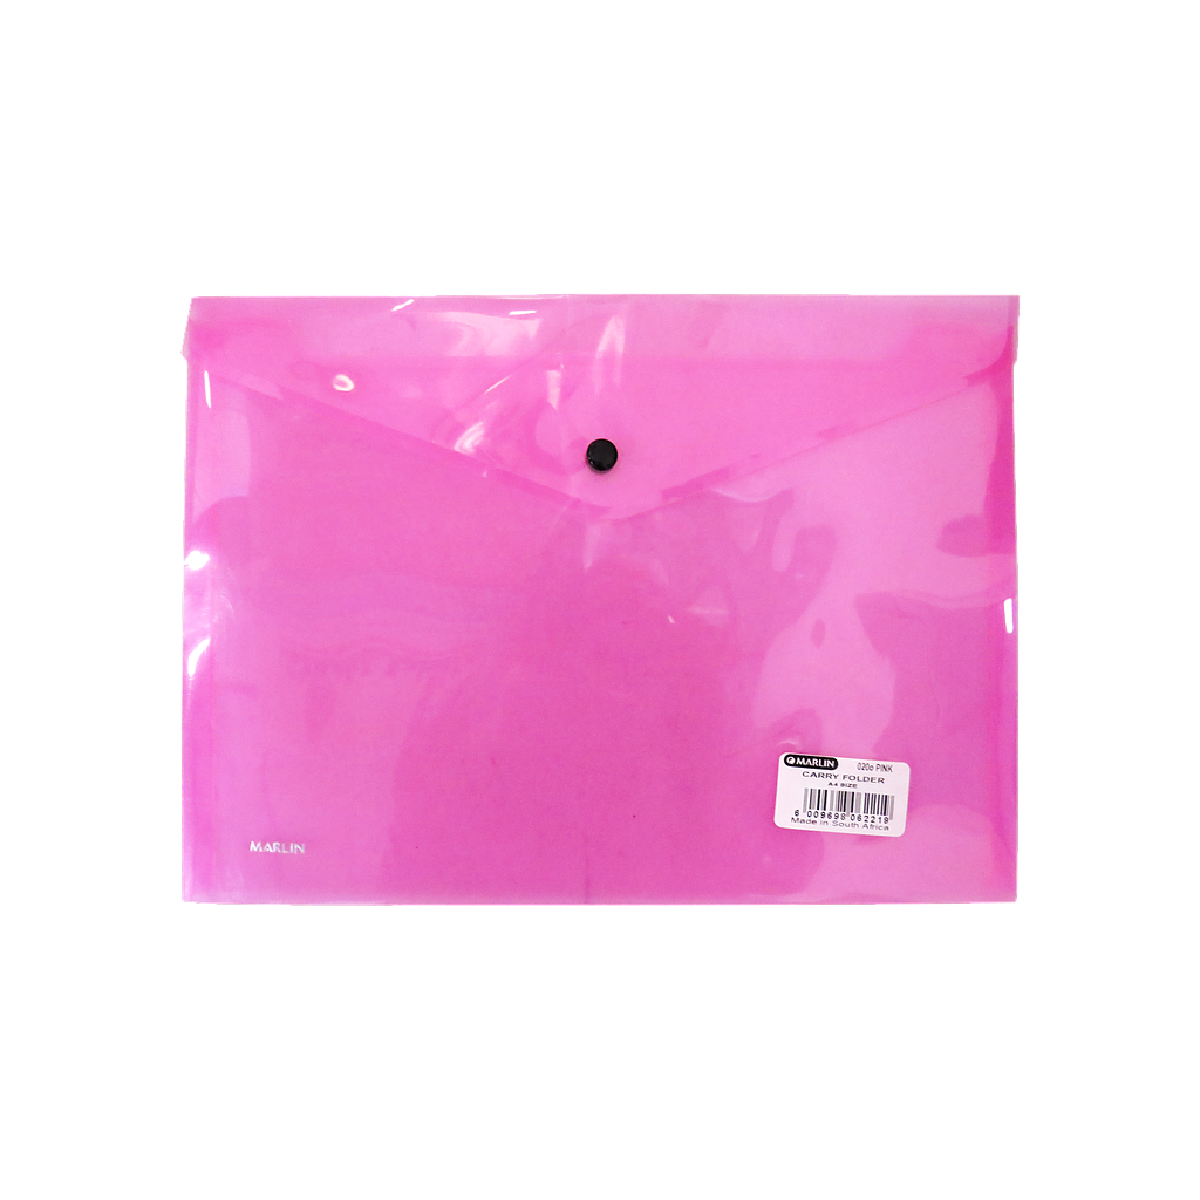 Marlin Carry Folder A4 Pink